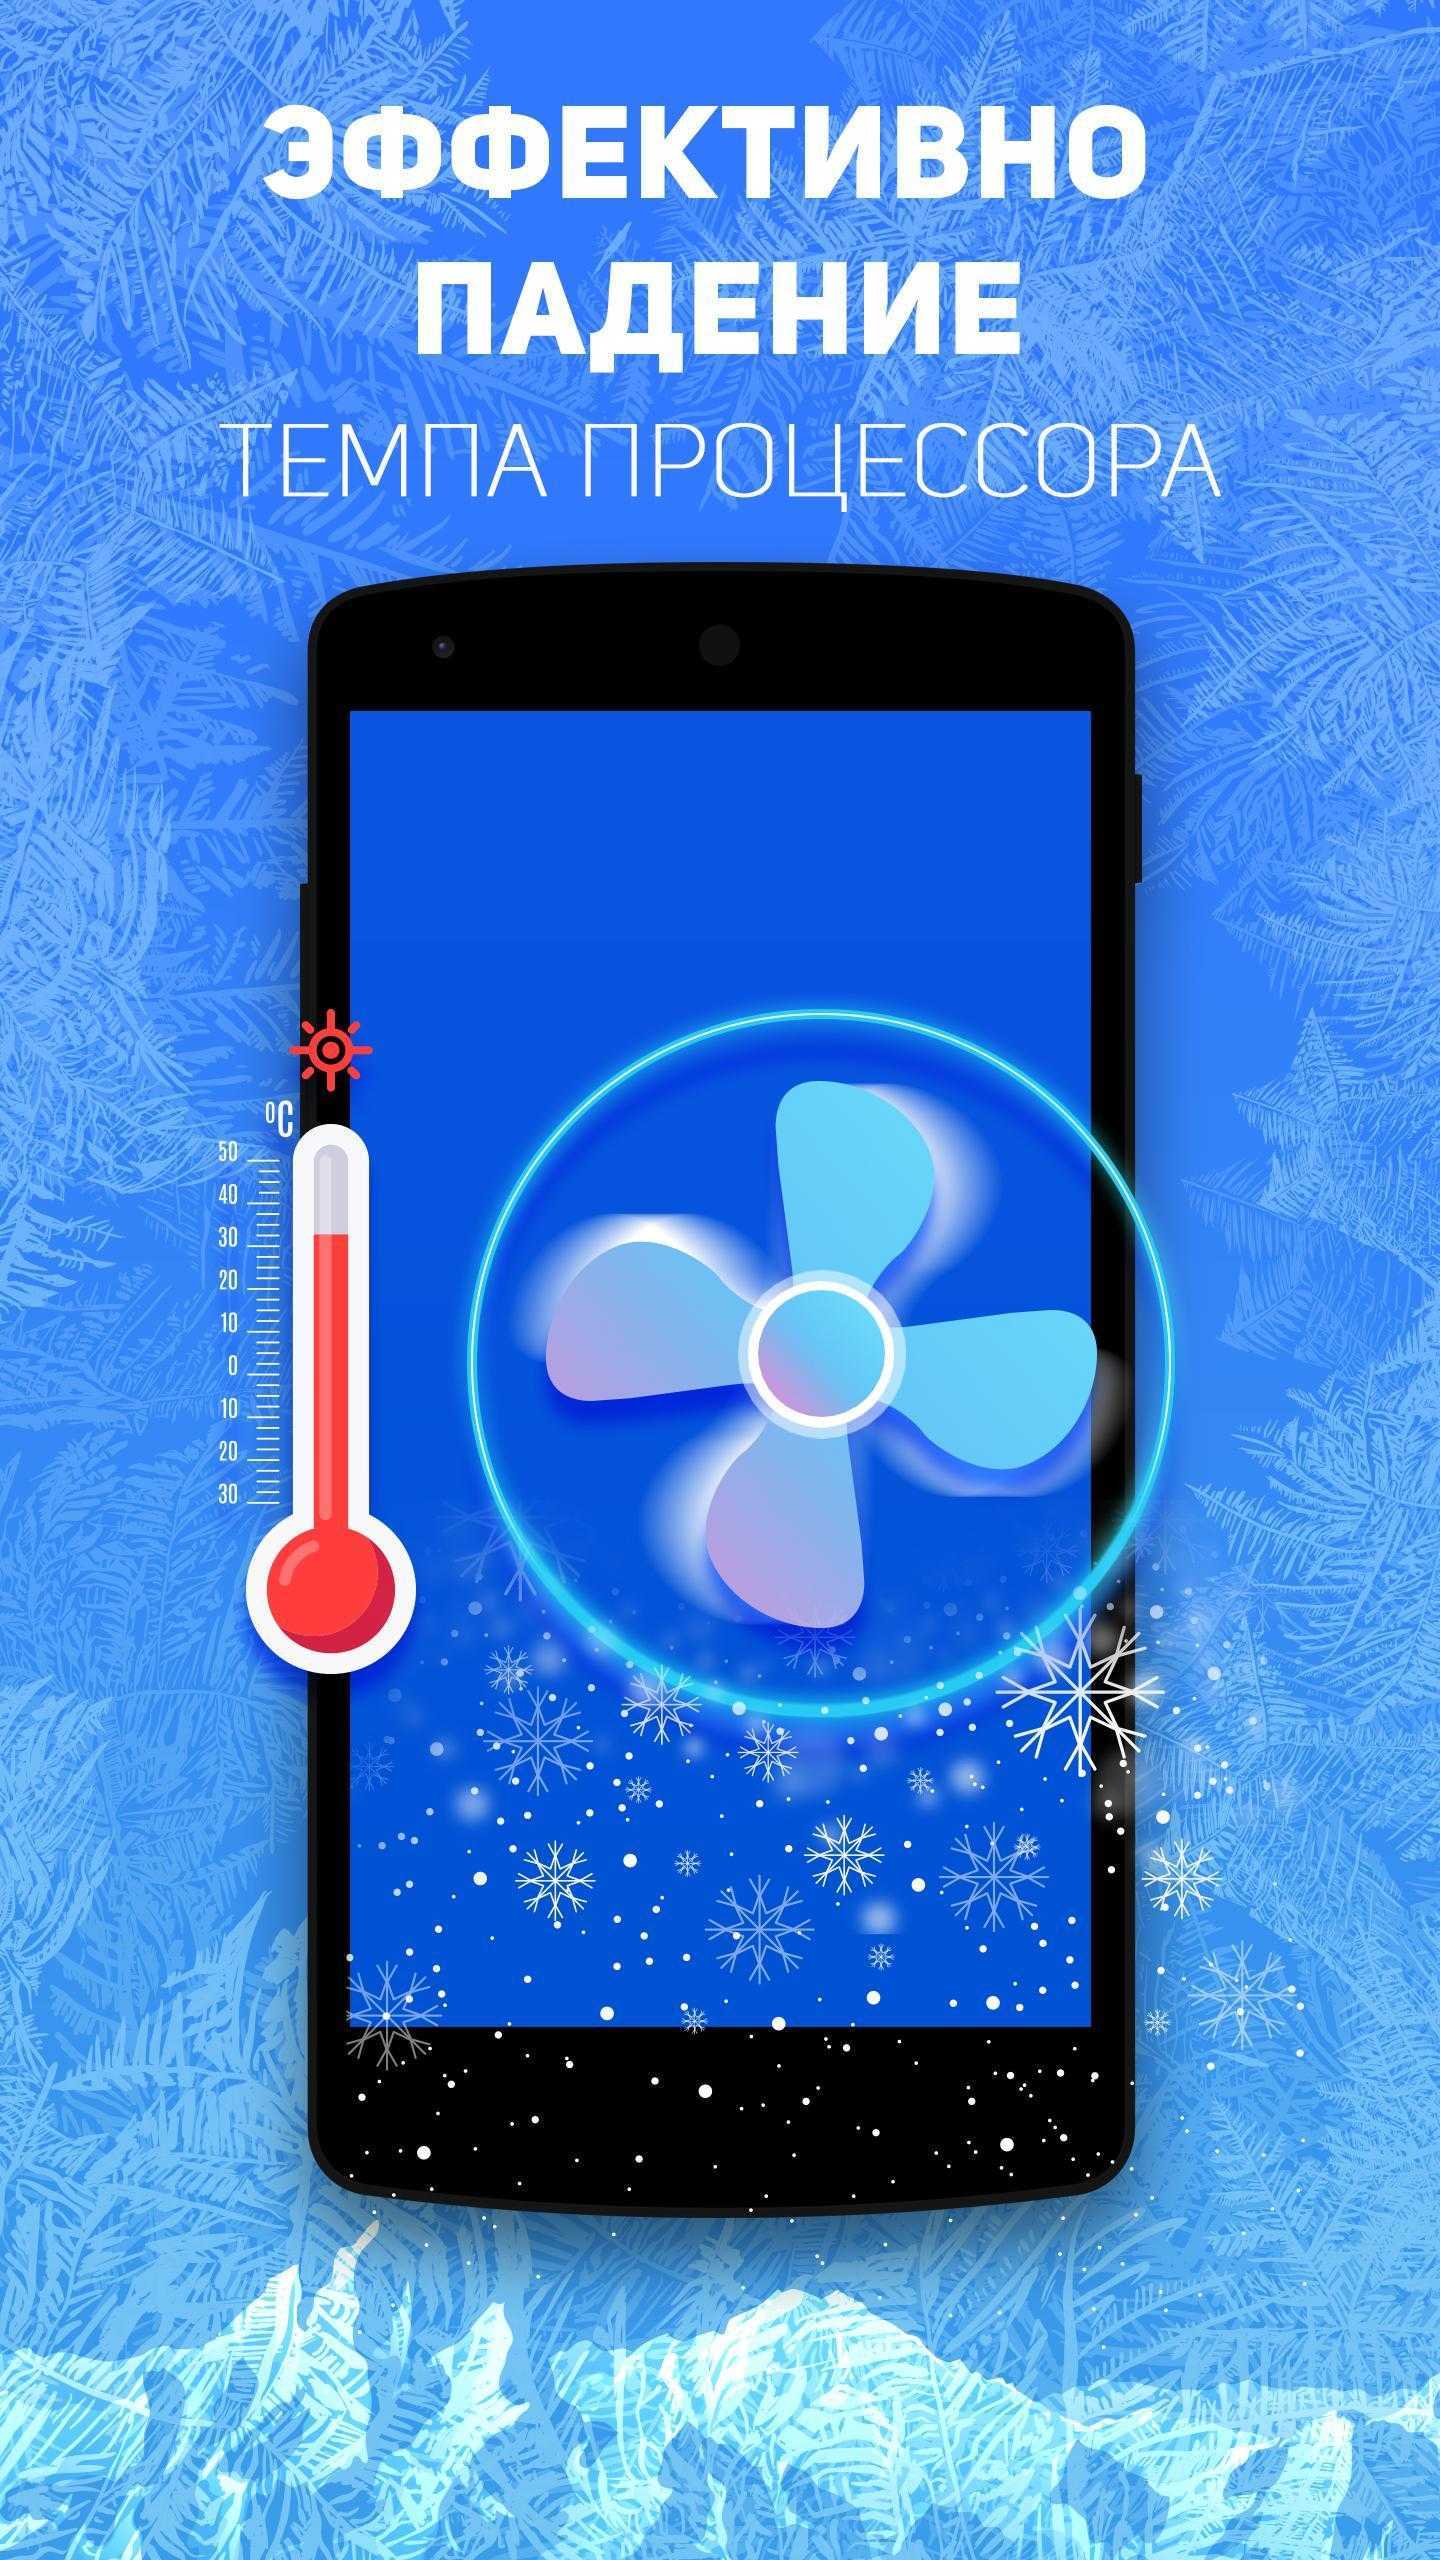 Нагрев Android при использовании неизбежен - для понижения температуры необходимо устранить источник проблемы или задействовать внешние средства охлаждения